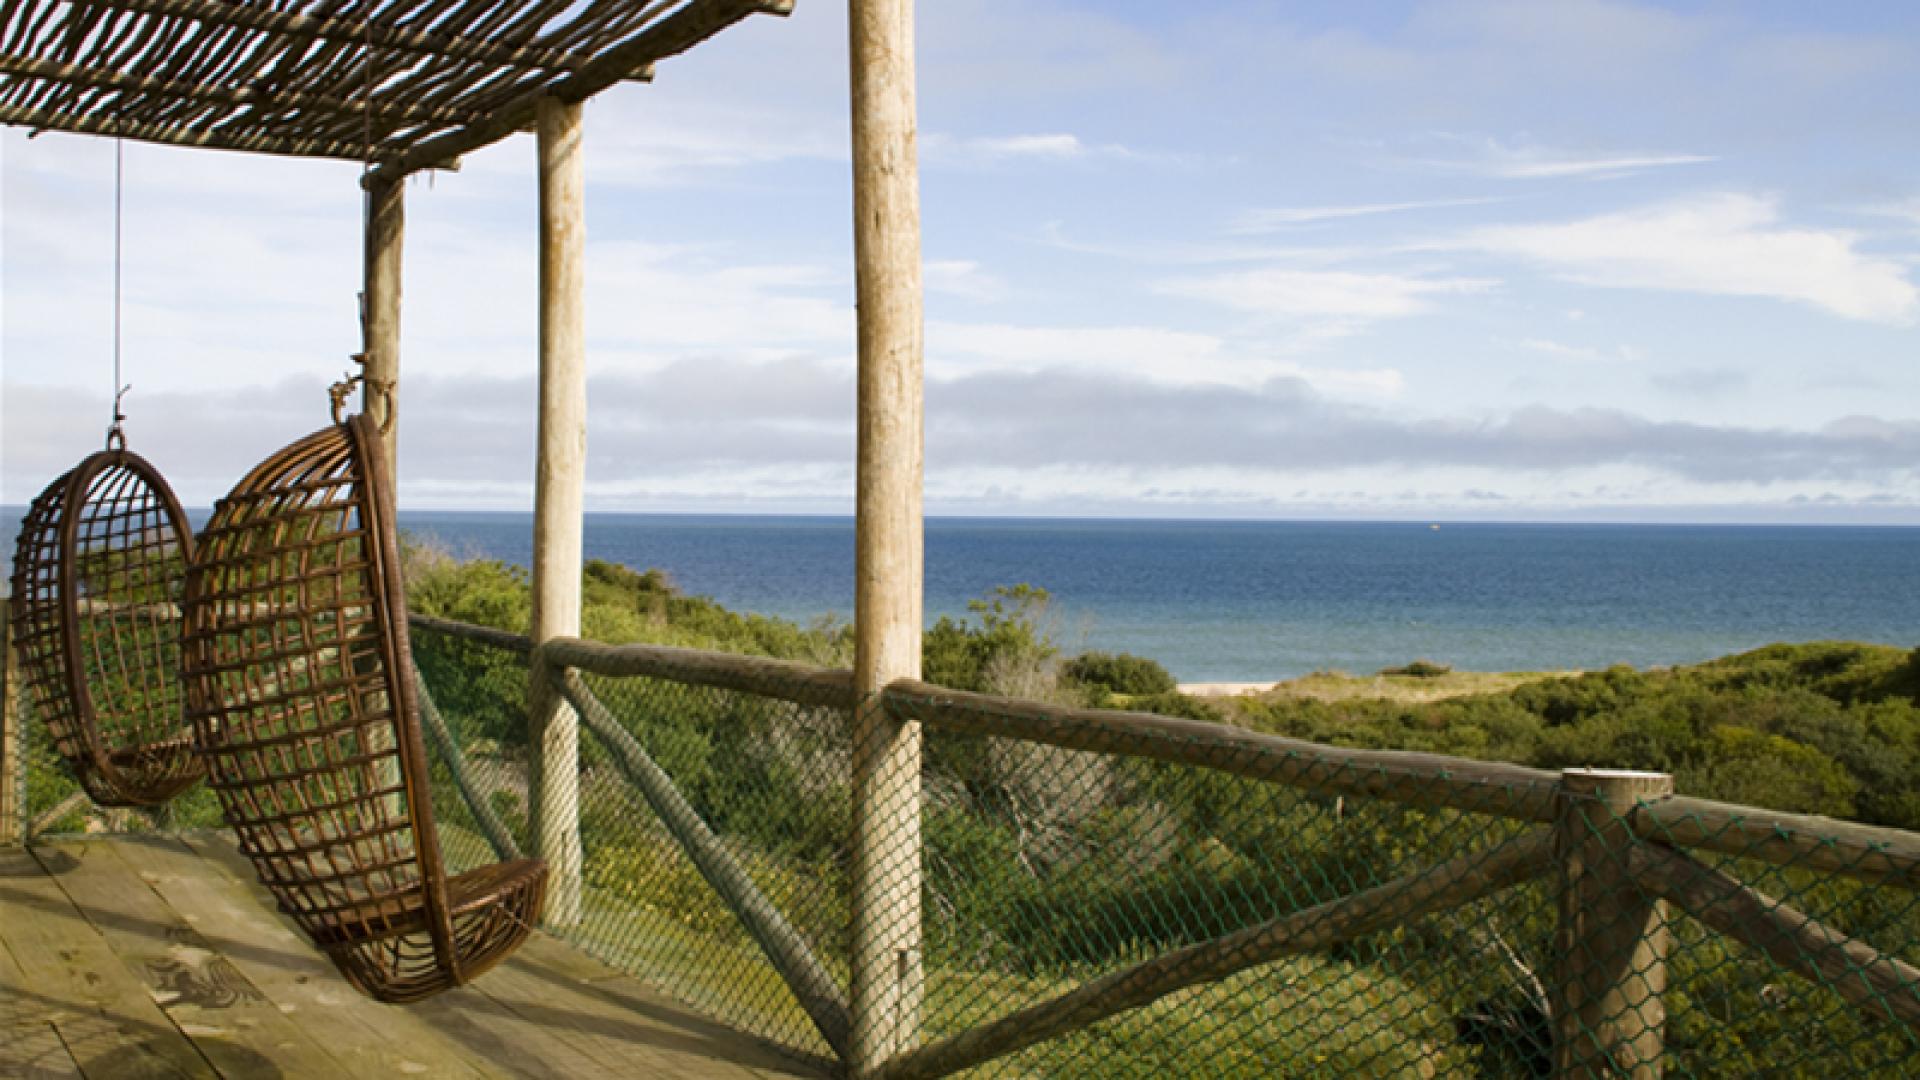 Ultra Private Beachfront Estate located in Jose Ignacio, Punta del Este, Uruguay, listed by Curiocity Villas.